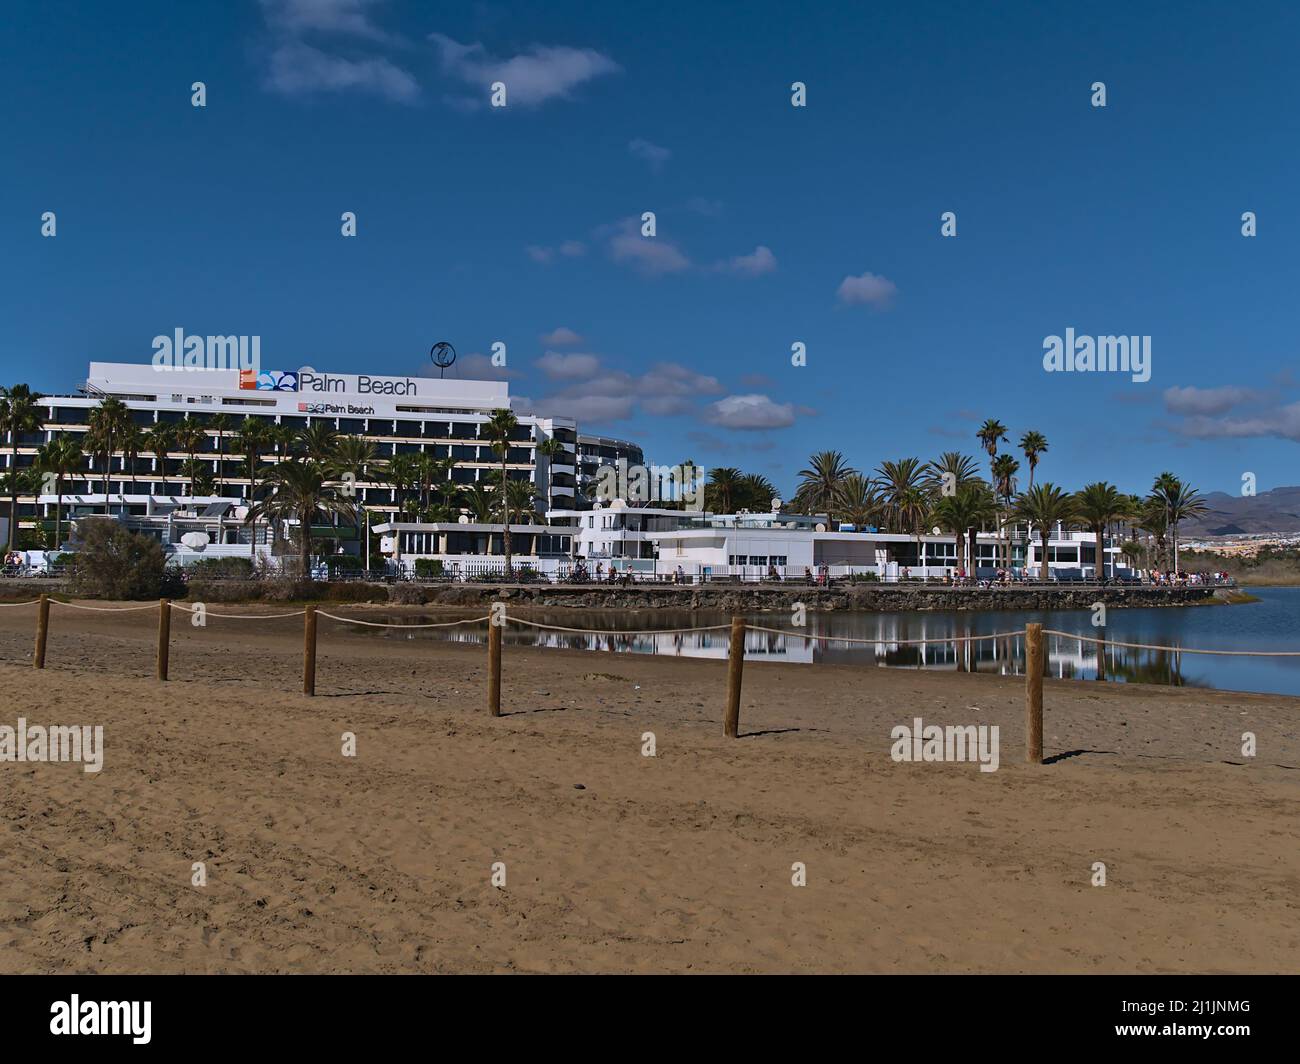 Bella vista del popolare hotel di lusso Palm Beach situato sulla spiaggia nel distretto di Meloneras nella città di Maspalomas, a sud di Grand Canaria, in giornata di sole. Foto Stock